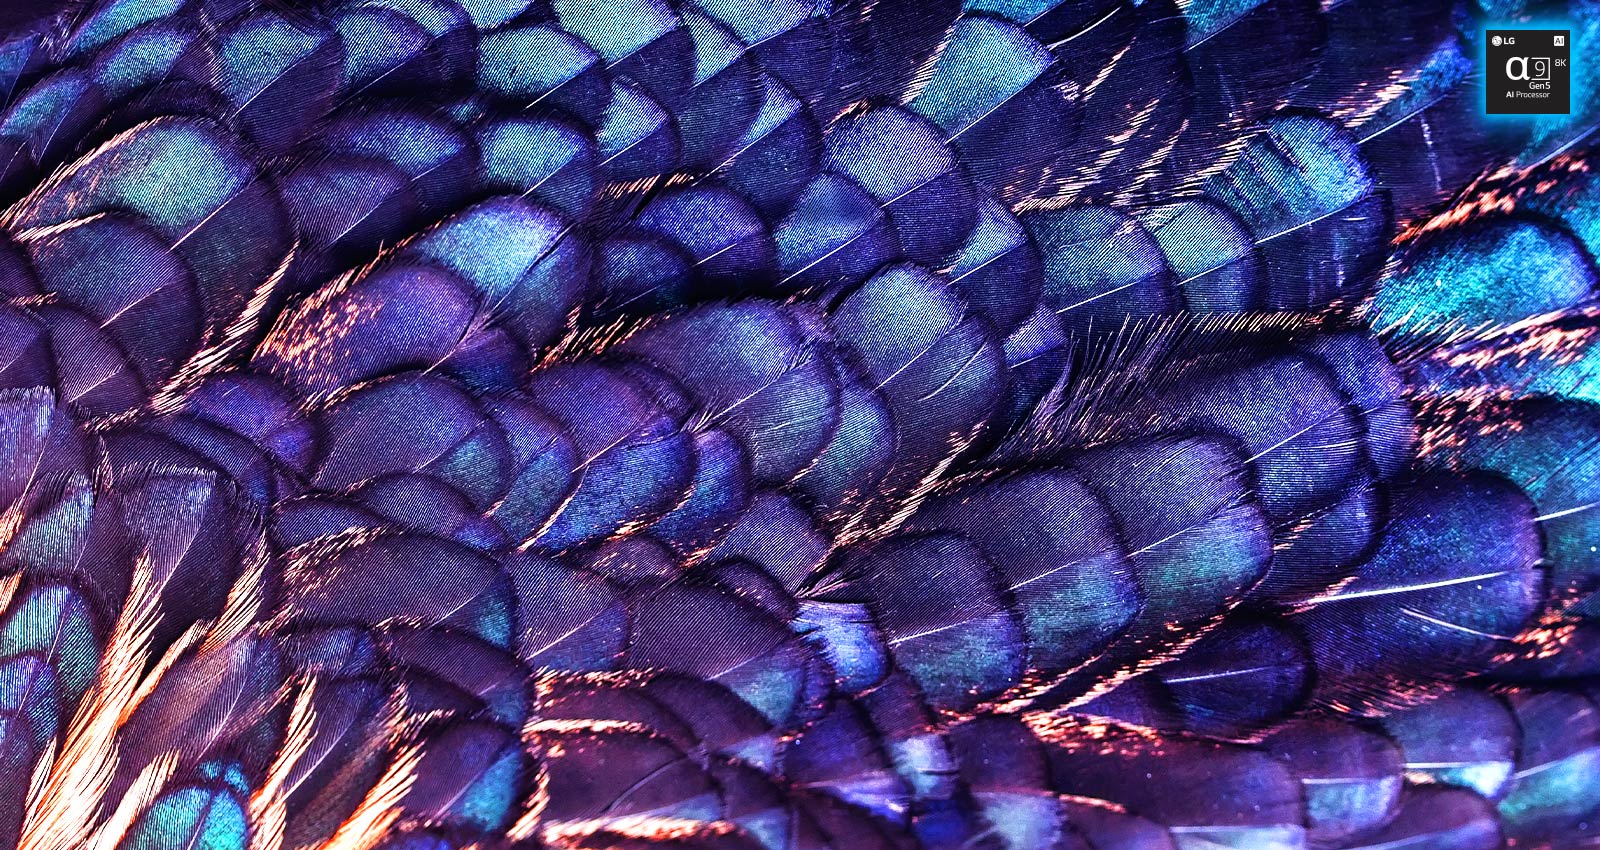 Rodomas ryškaus violetinės spalvos paukščio vaizdas su vaivorykštės spalvų tekstūromis. Vaizdas padalintas į dvi dalis - kairoji yra mažiau ryški, dešinioji - ryškesnė. Ties ja, viršutinėje dešinėje dalyje, yra užrašas „AI 8K upscaling“ (Dirbtinio intelekto atliekamas 8K didinimas) ir procesoriaus lusto vaizdas.